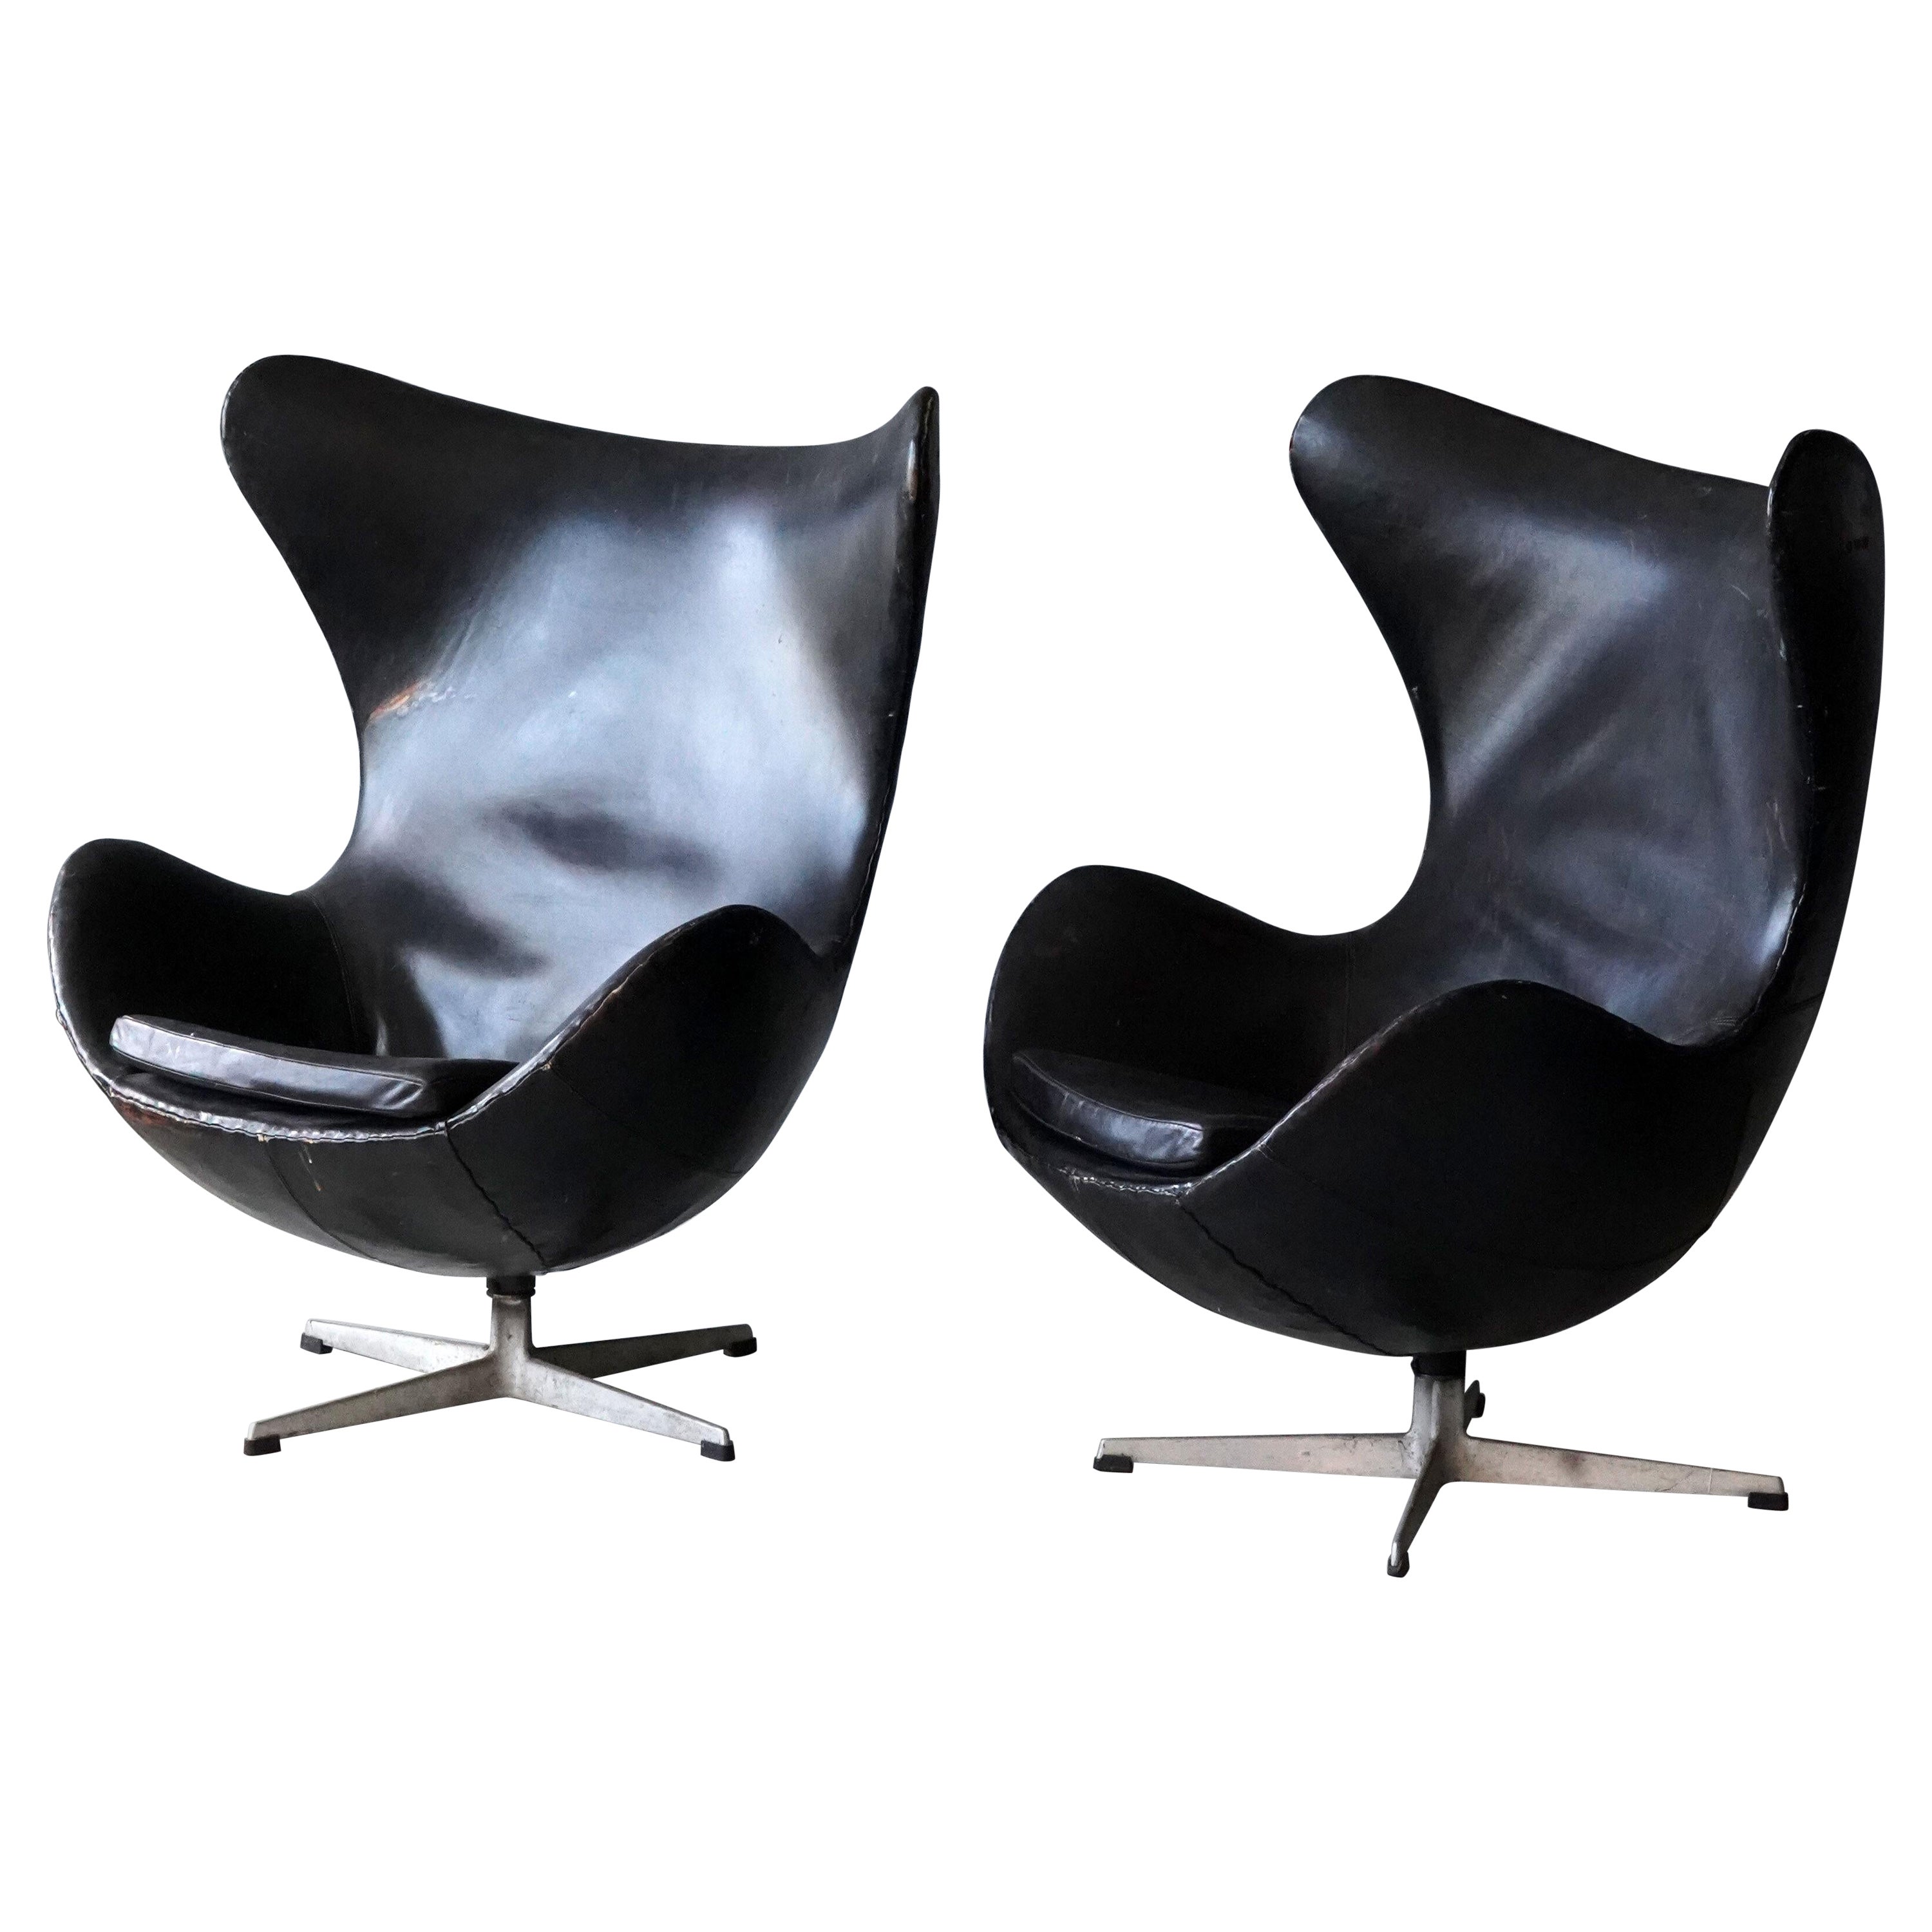 Arne Jacobsen, "Egg" Lounge Chairs, Black Leather, Fritz Hansen, Denmark, 1958